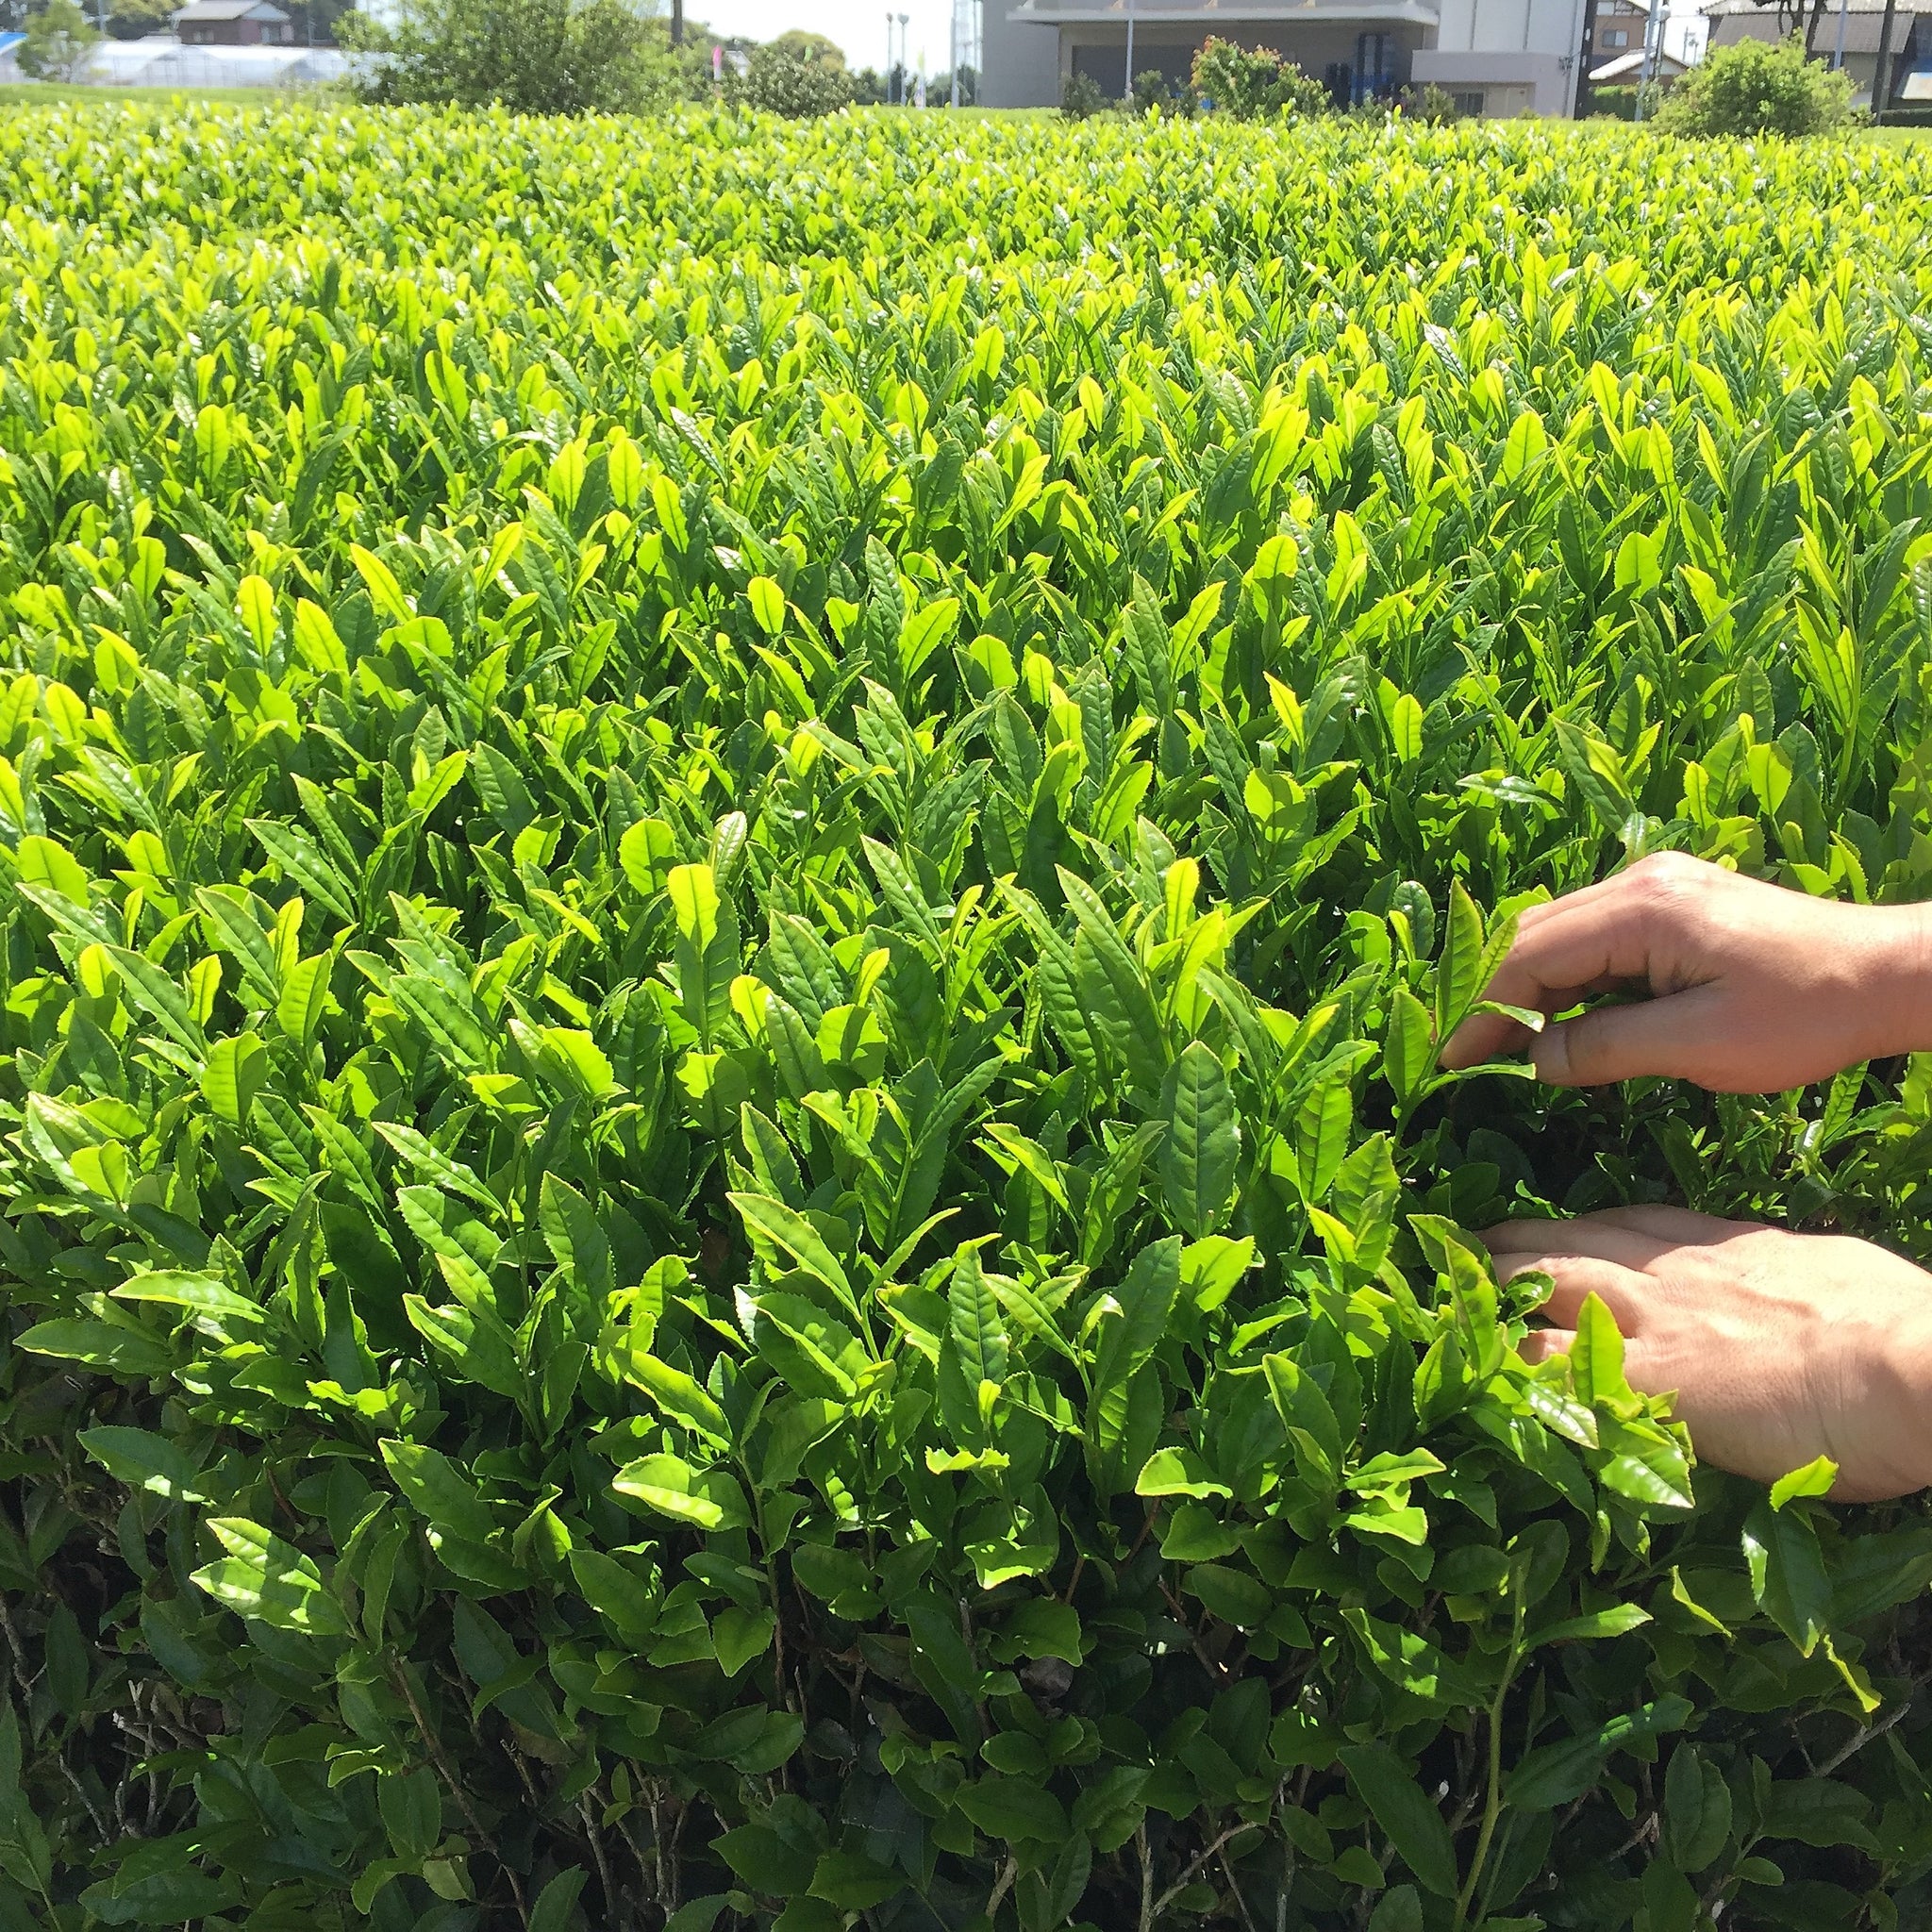 Image of farmer's hands picking tea leaves.